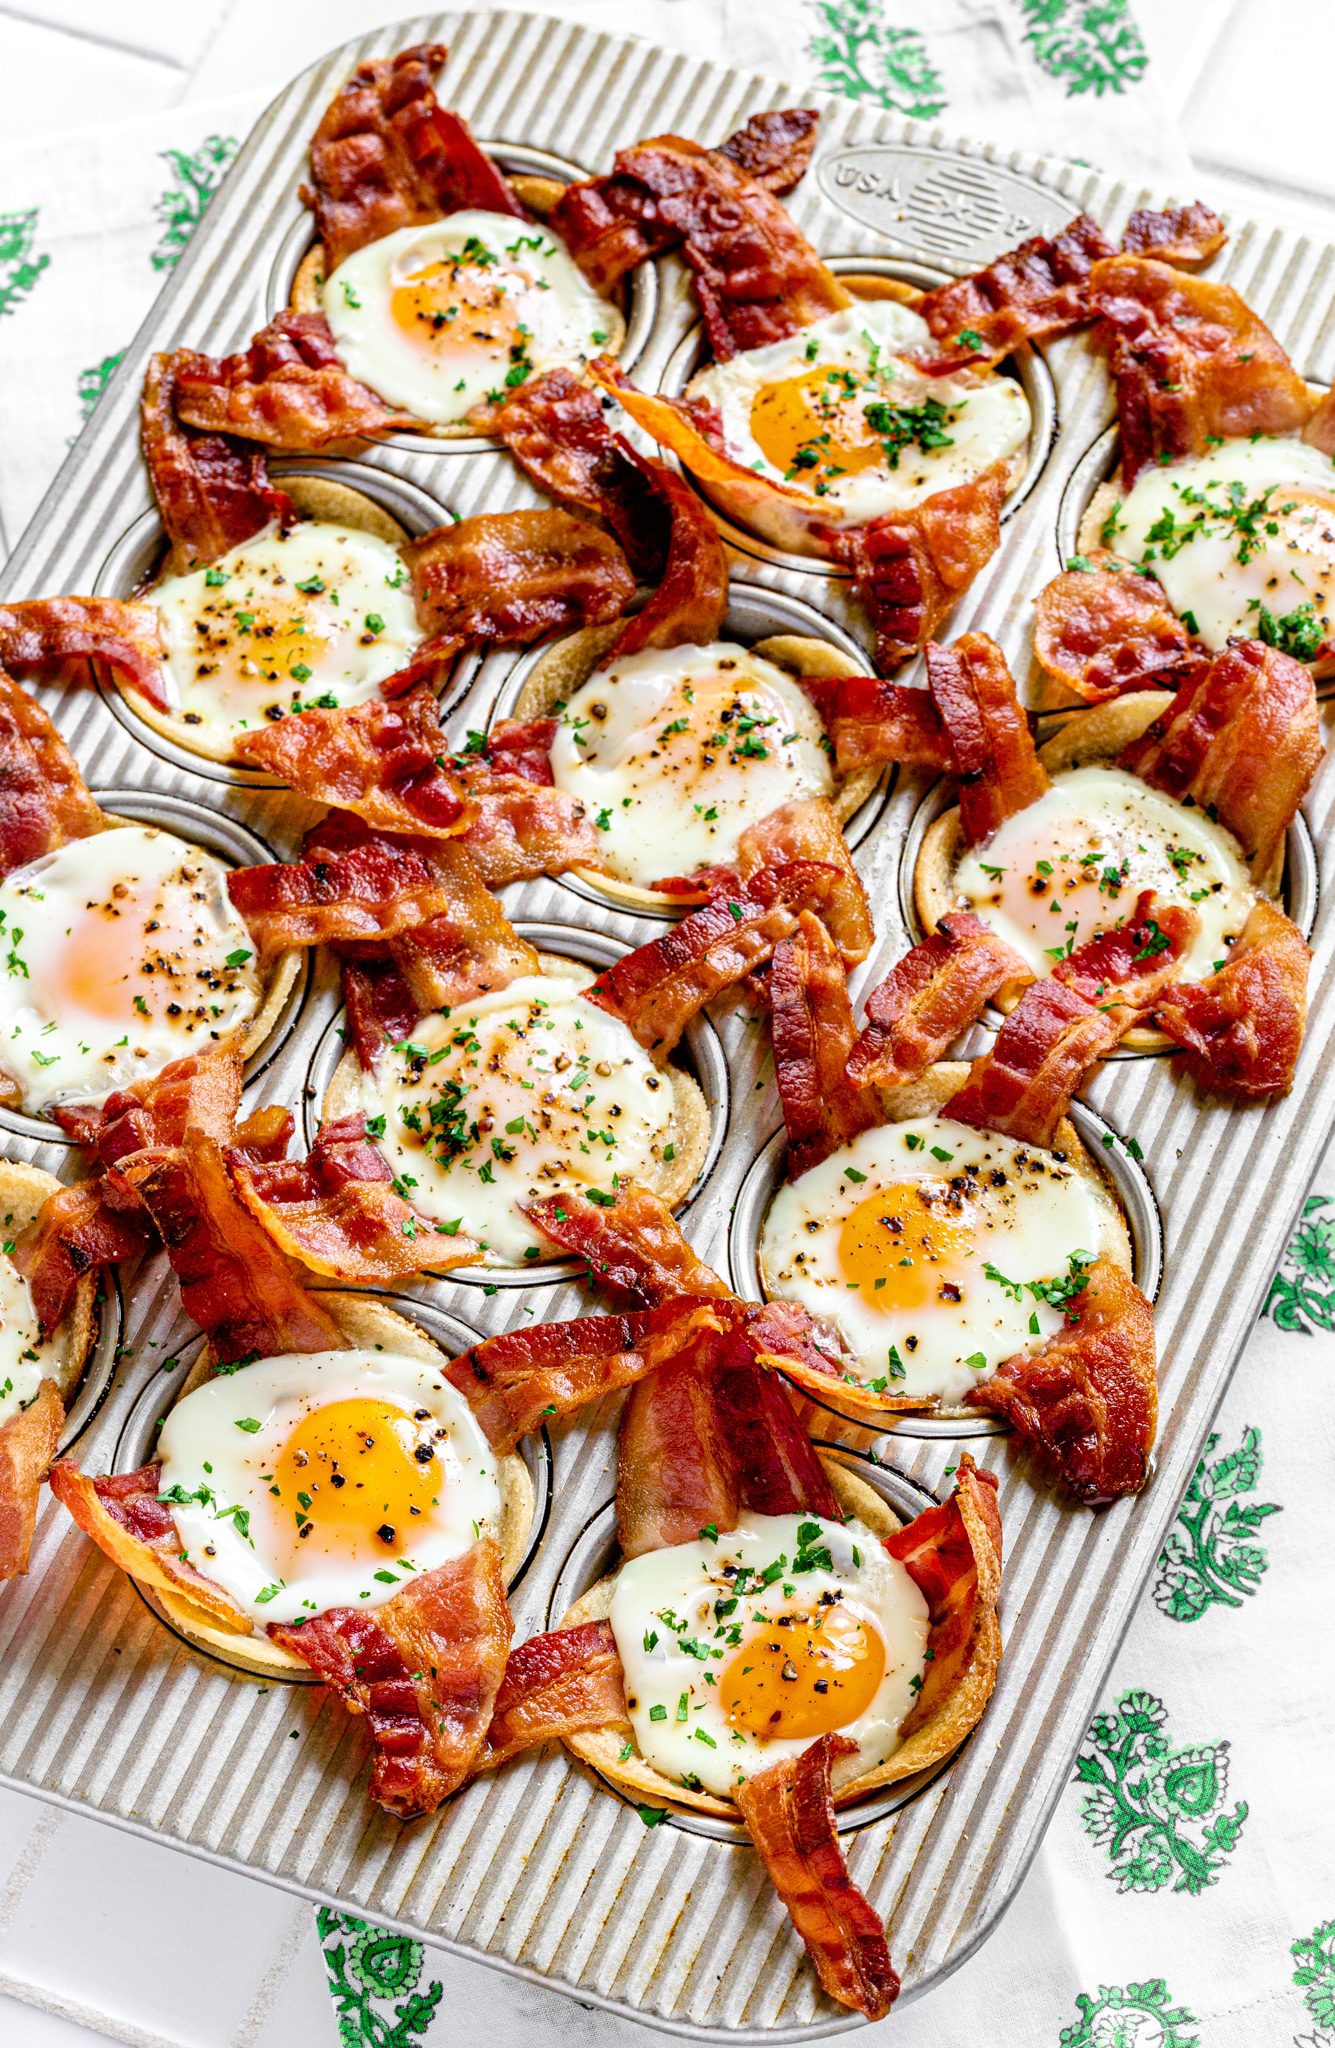 101 Recipes Using Bacon From Savory To Sweet - Tara Teaspoon